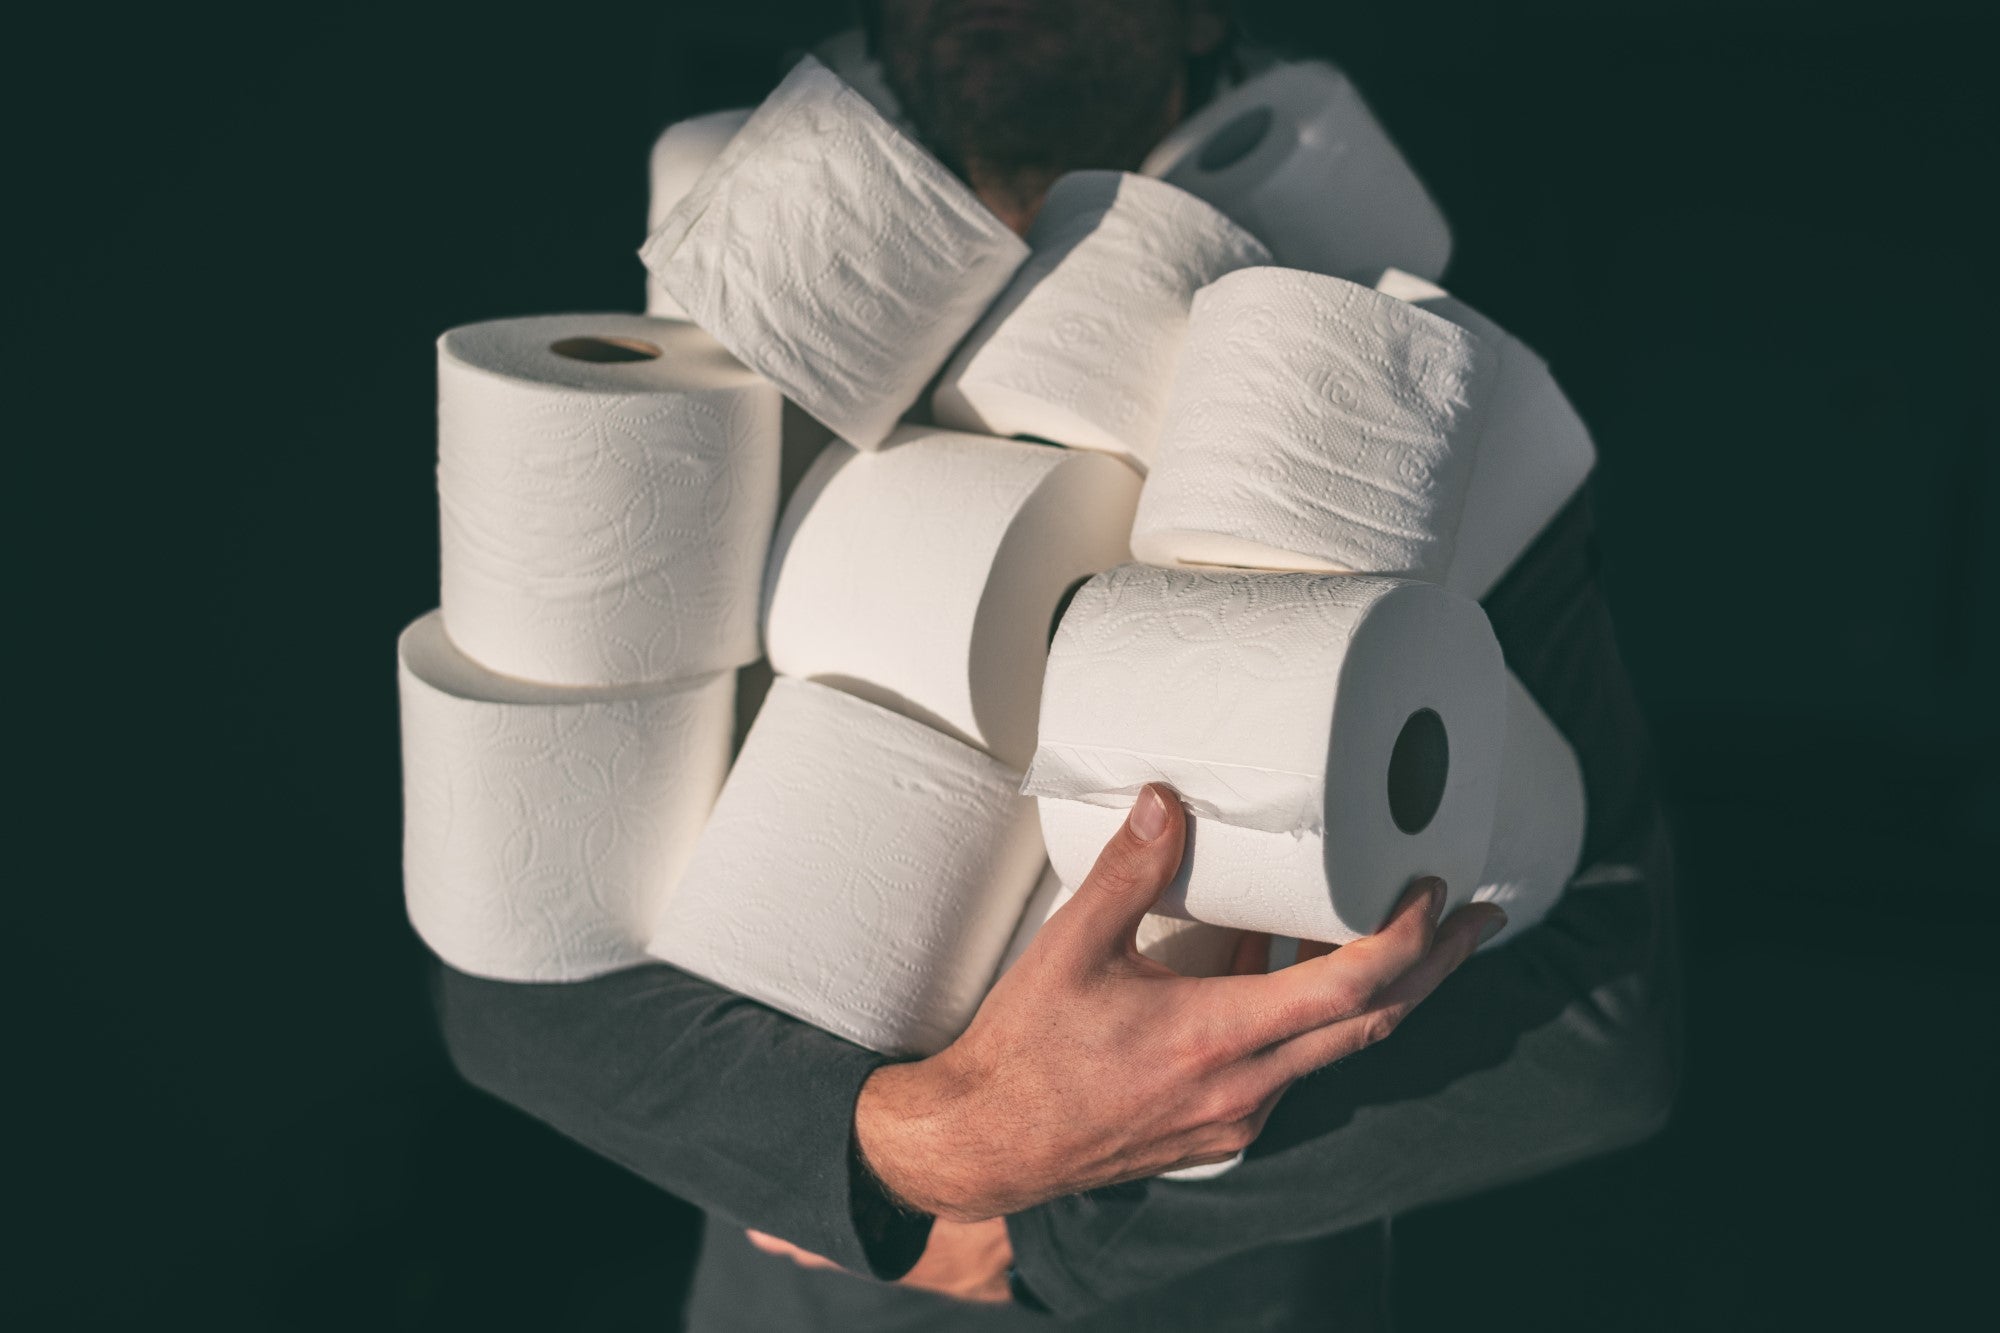 hoarding toilet paper